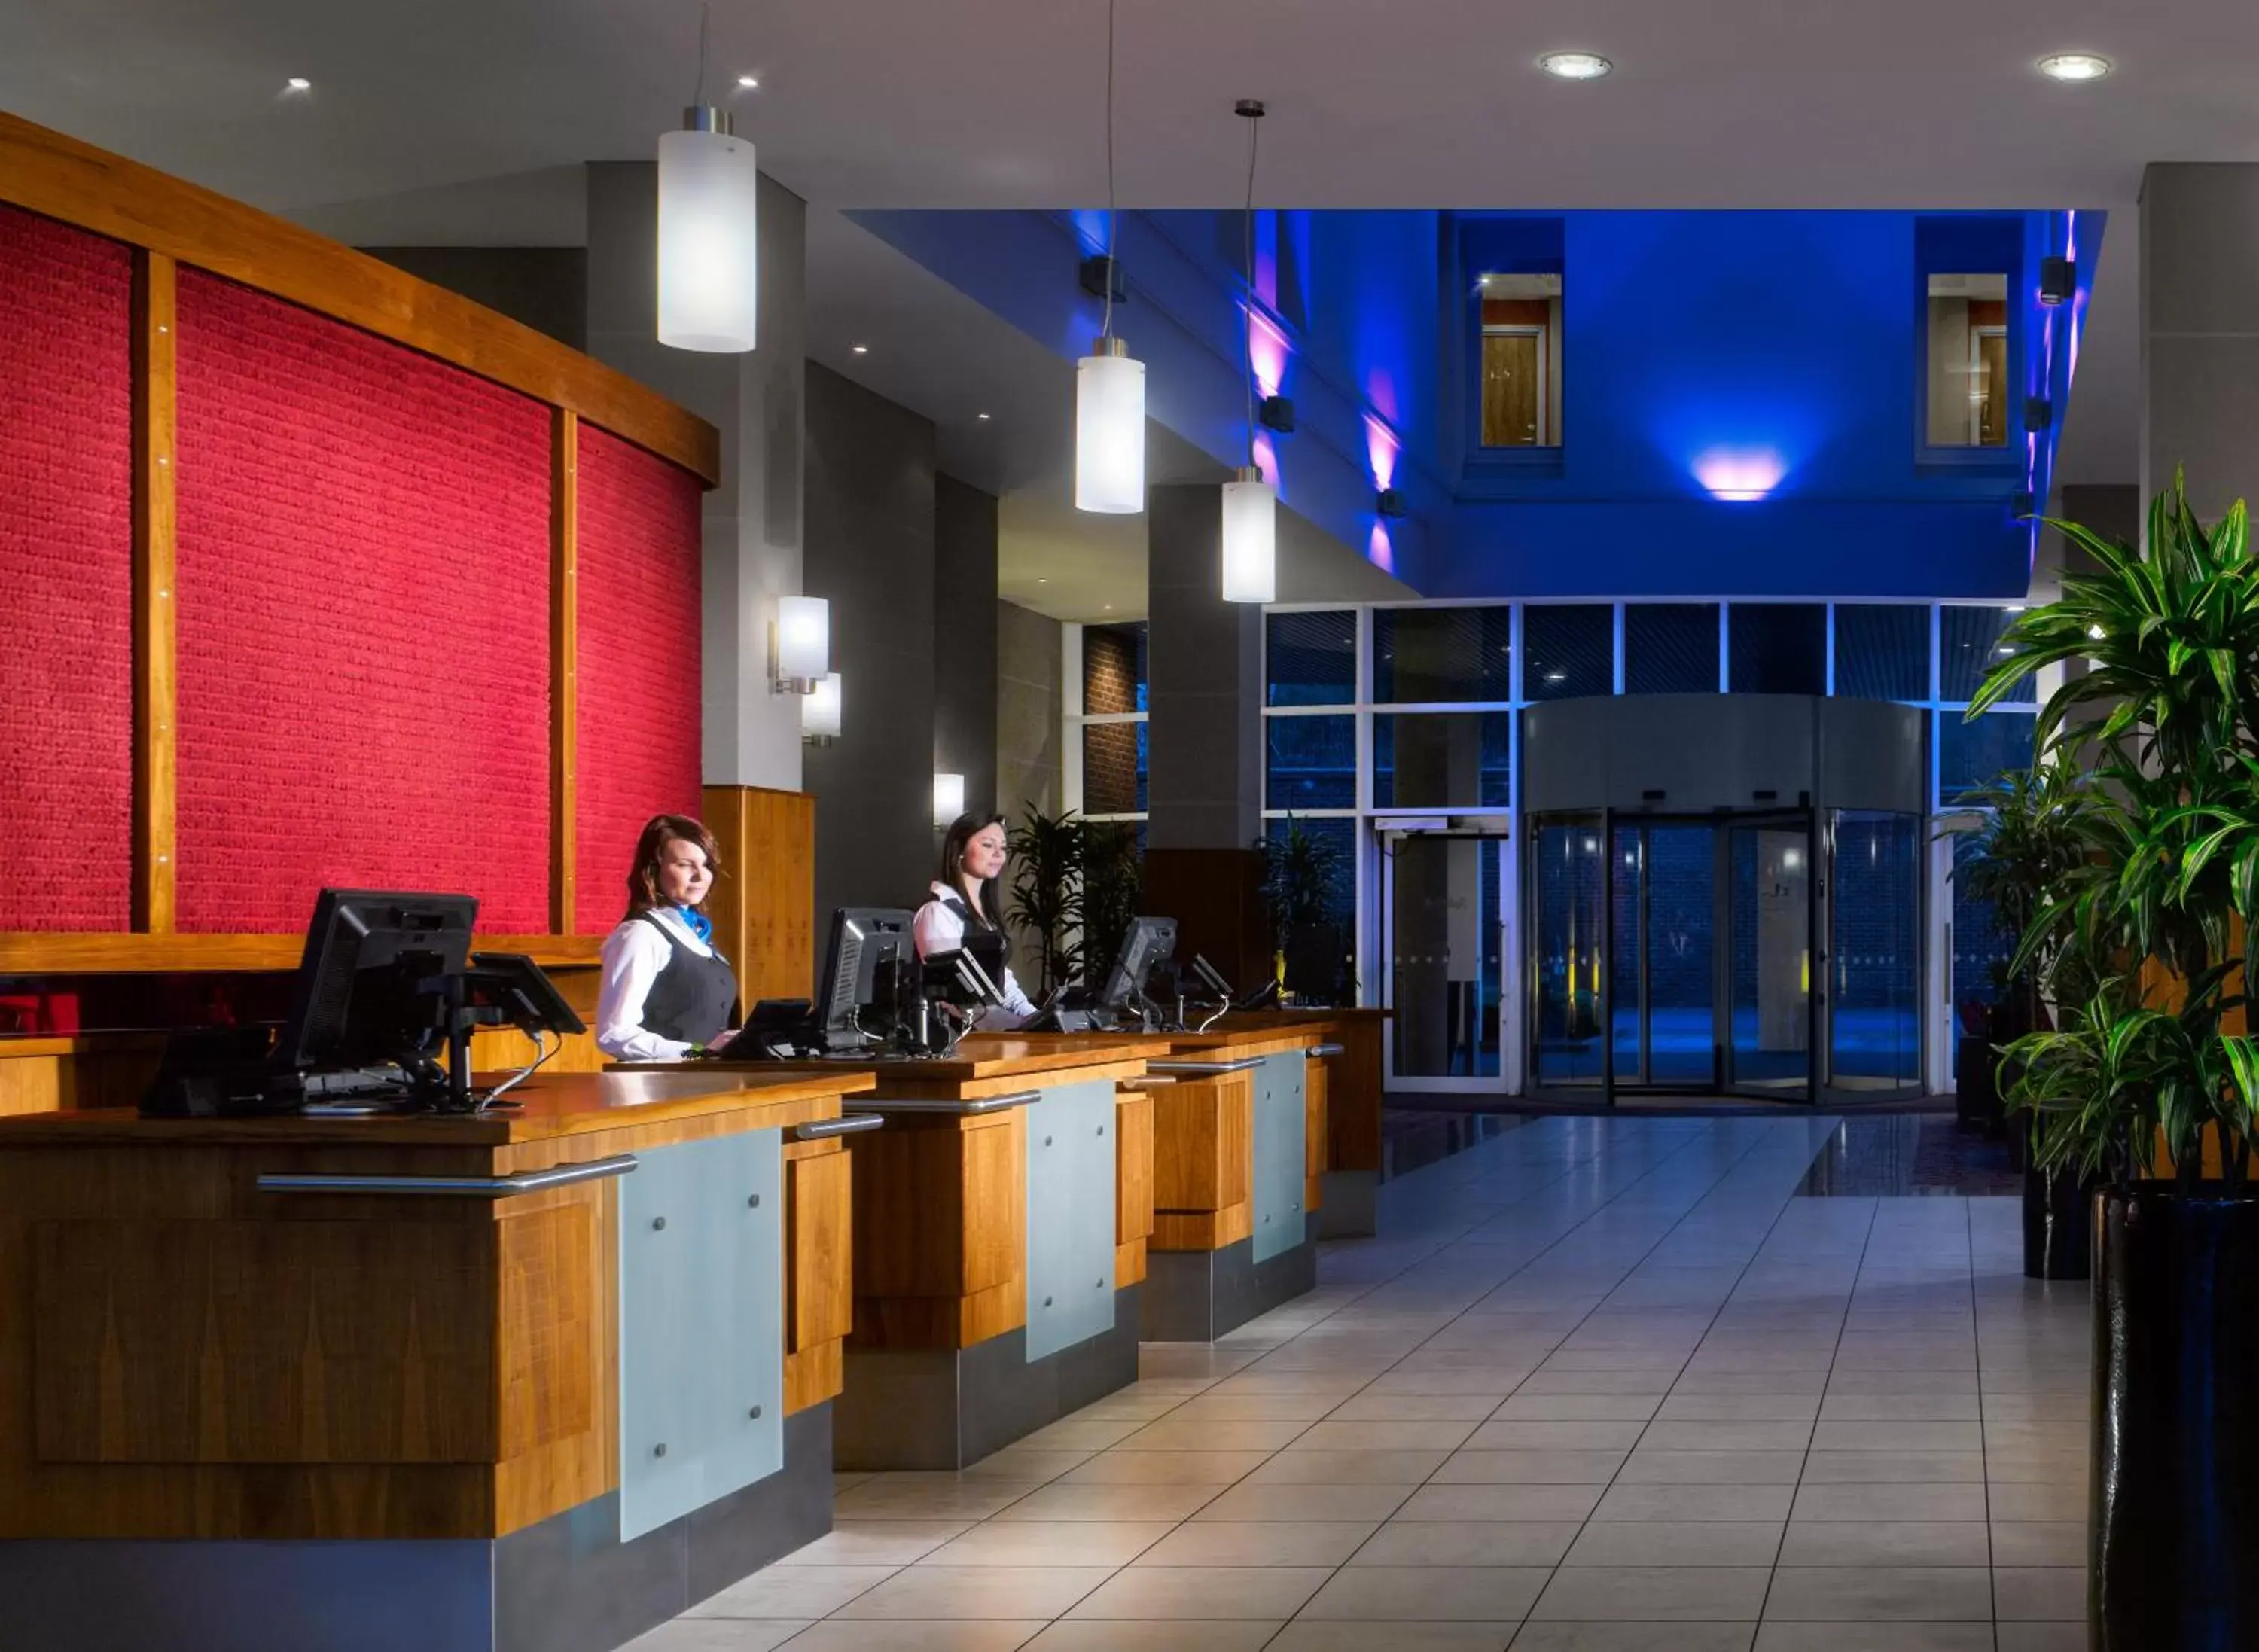 Lobby or reception in Radisson Blu Hotel, Durham